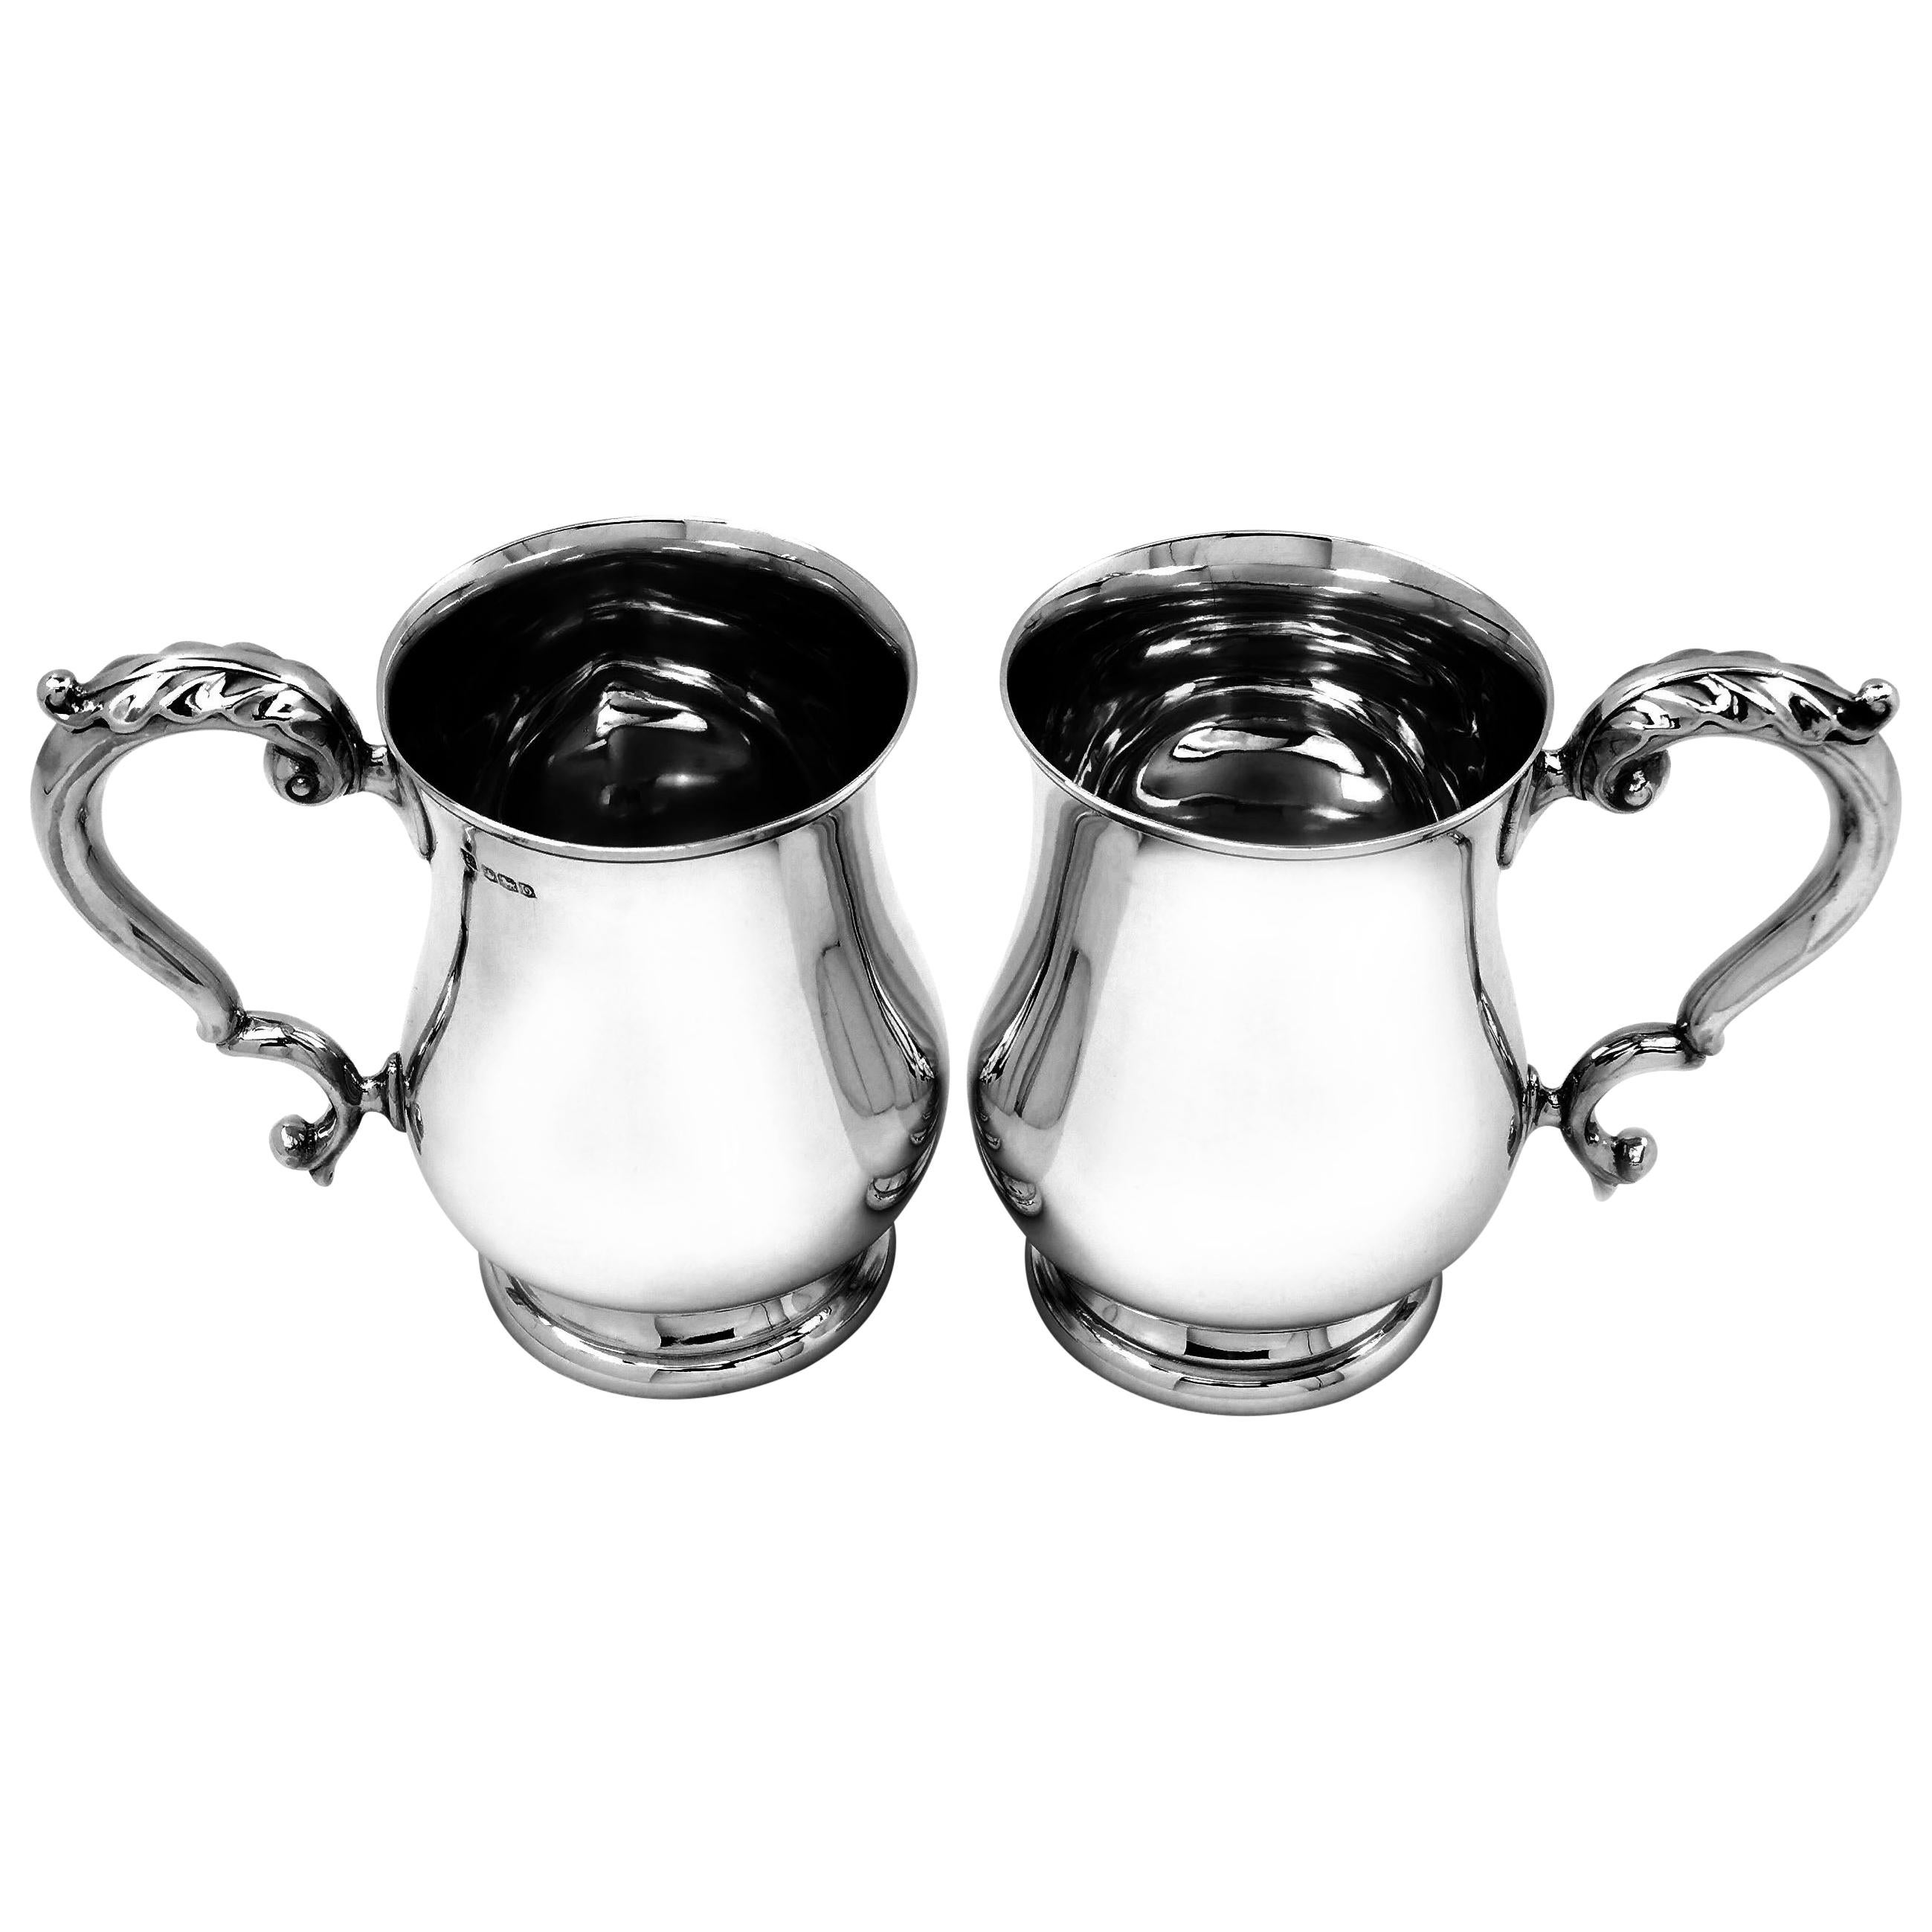 Pair of Vintage Sterling Silver Pint Mugs / Beers Mugs 1946 Georgian Style Set